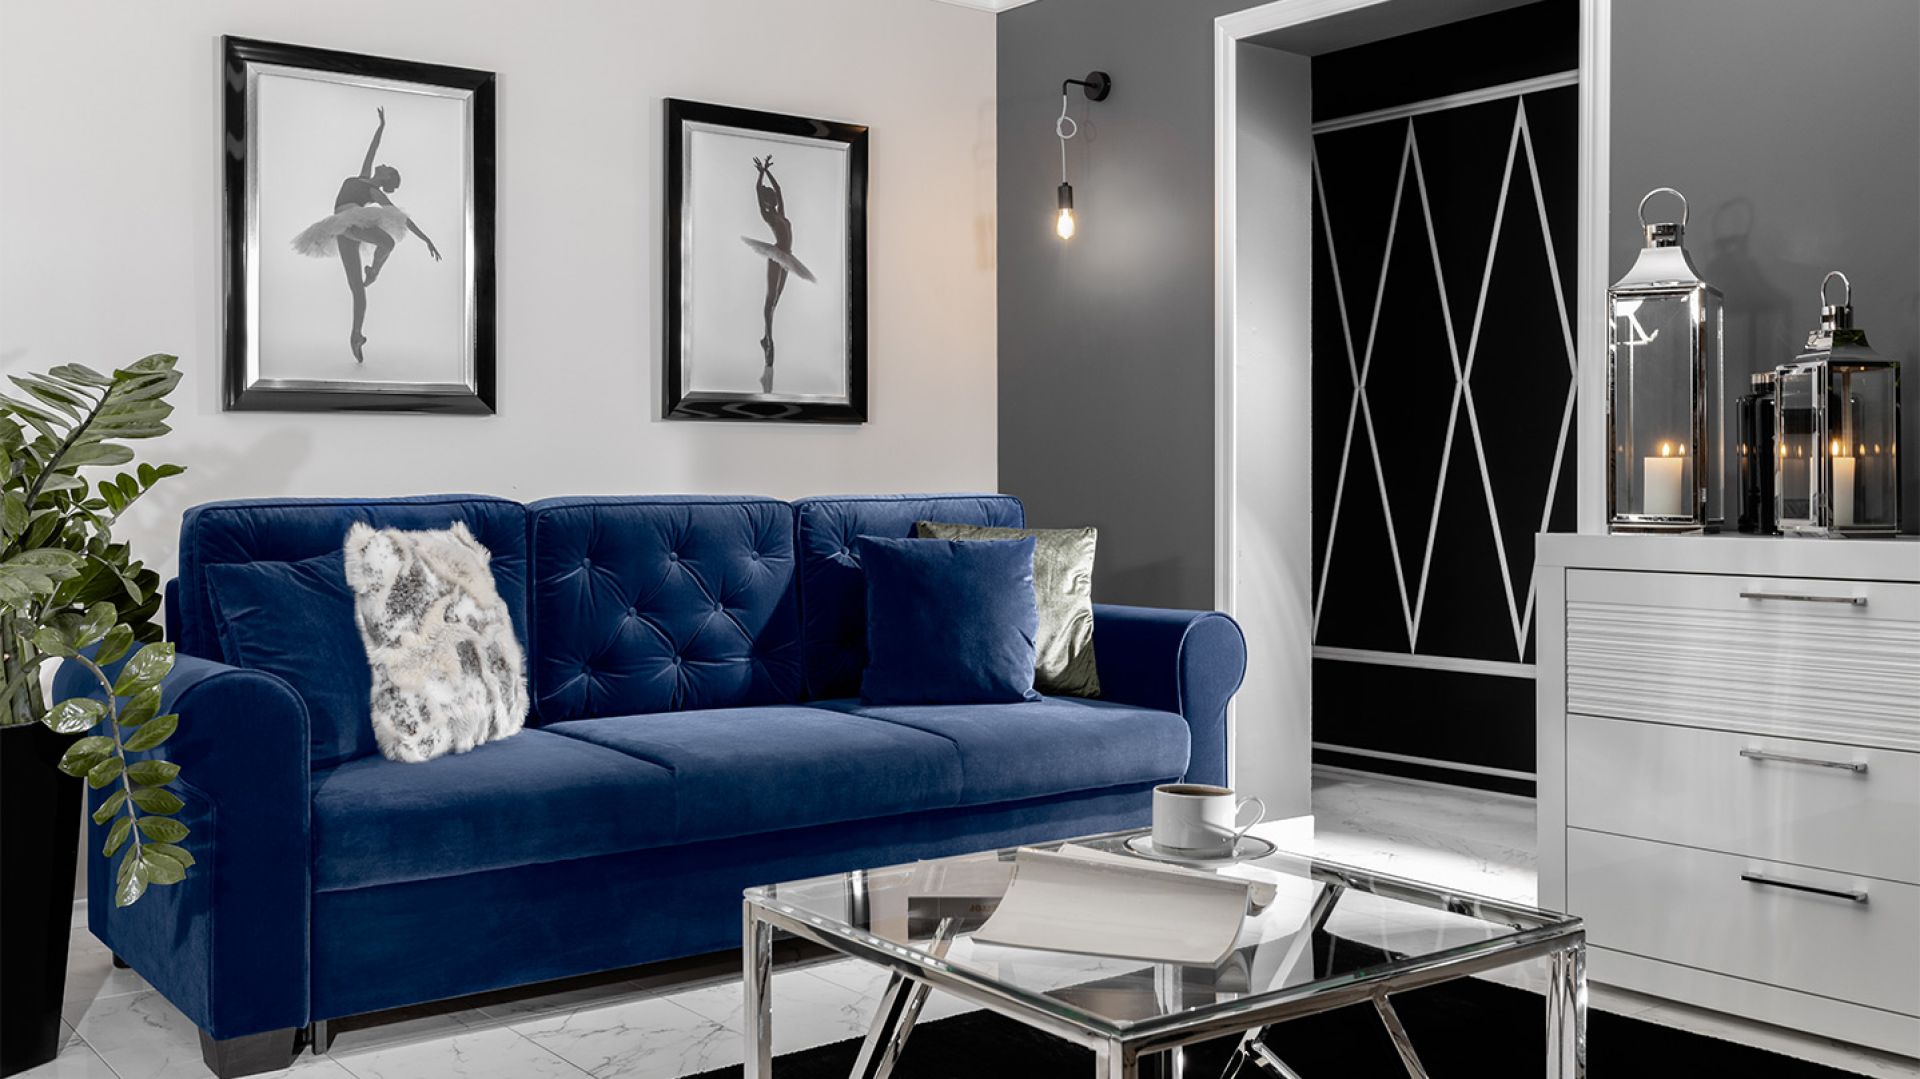 Meble do salonu: zobacz piękną kanapę w modnym, niebieskim kolorze!